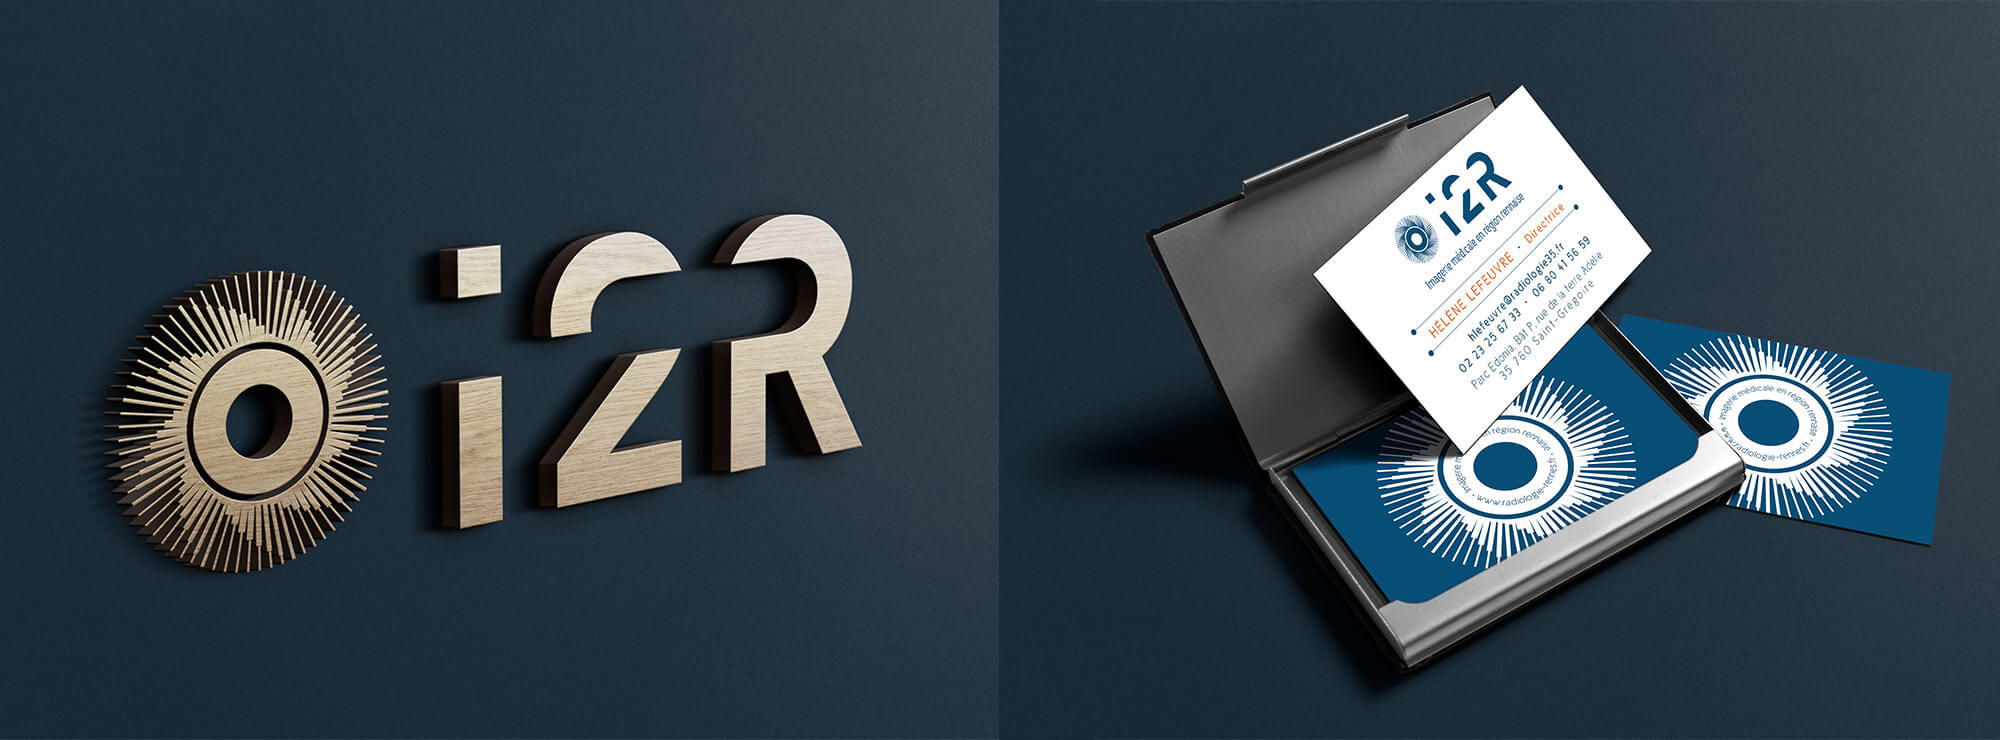 I2R - une identité visuelle qui voit au-delà